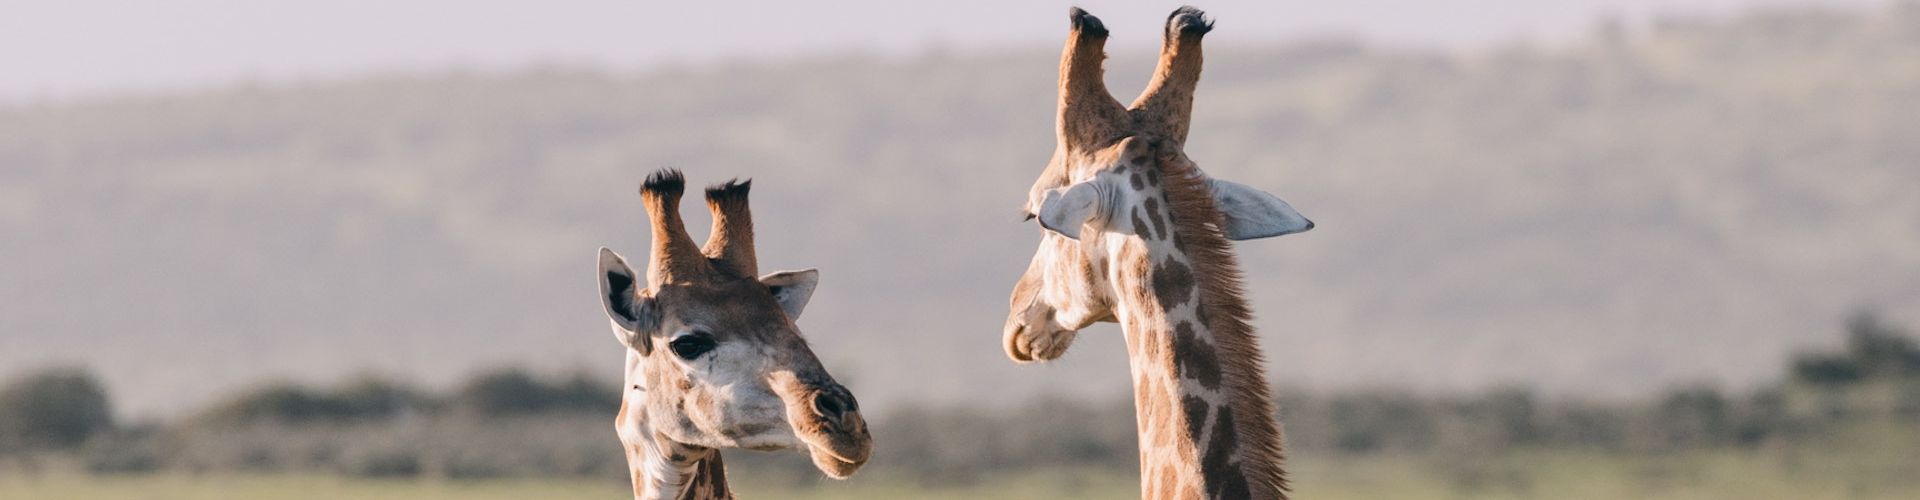 Twee giraffen die een gesprek voeren